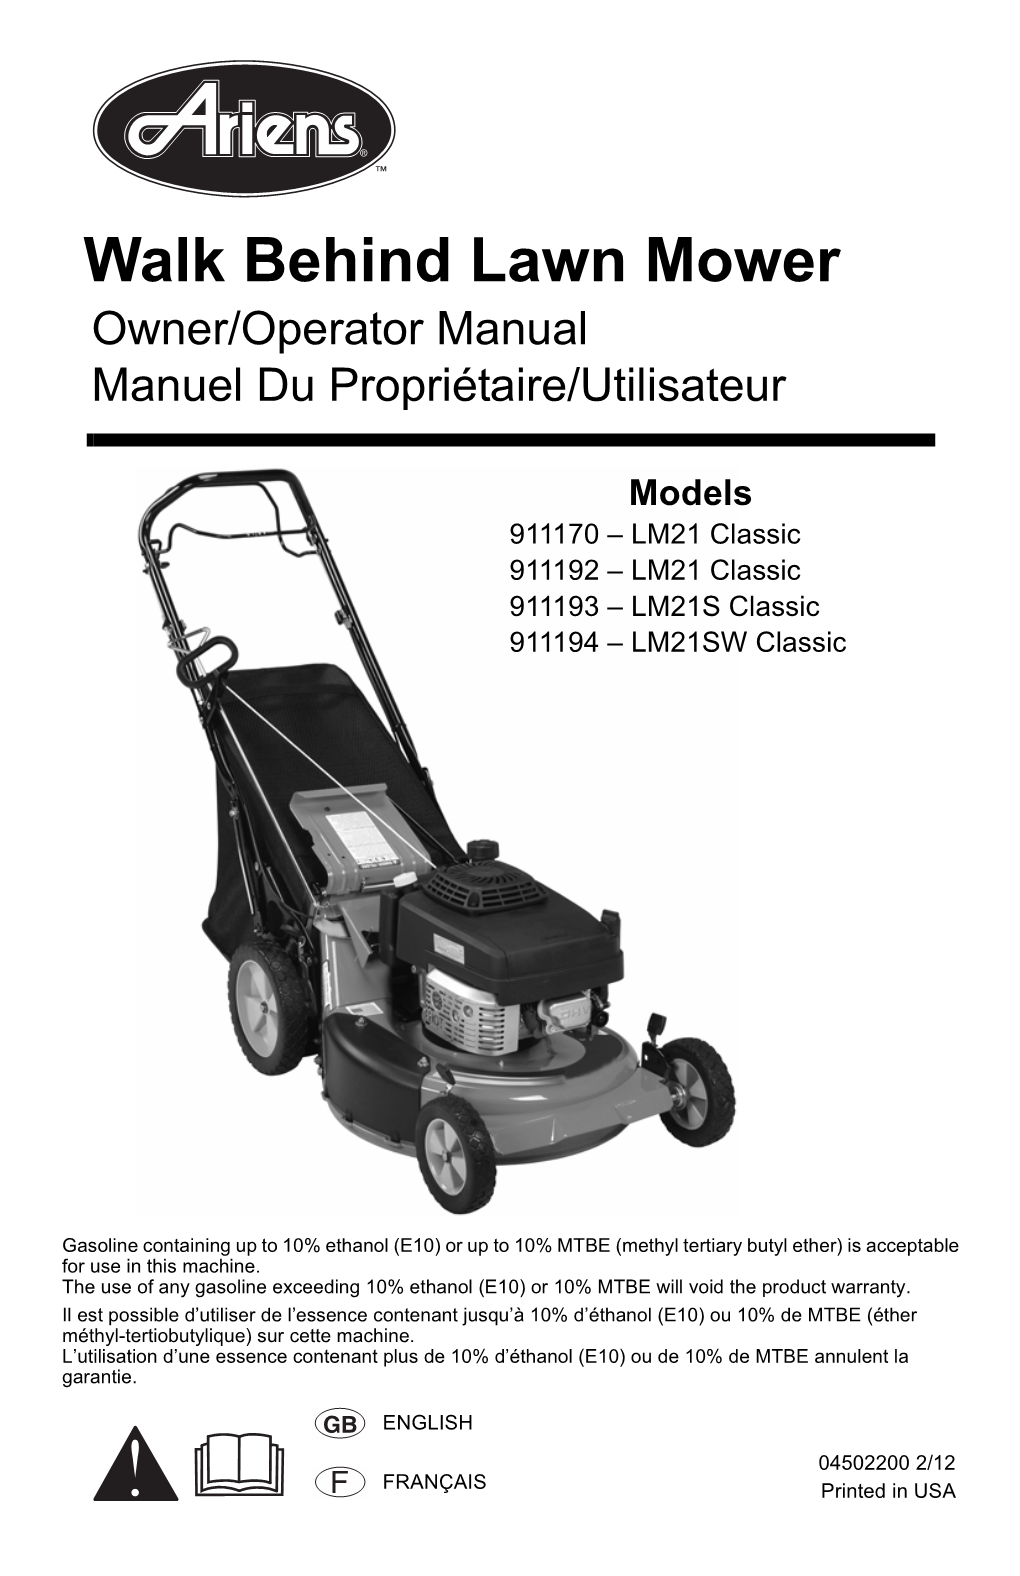 Walk Behind Lawn Mower Owner/Operator Manual Manuel Du Propriétaire/Utilisateur